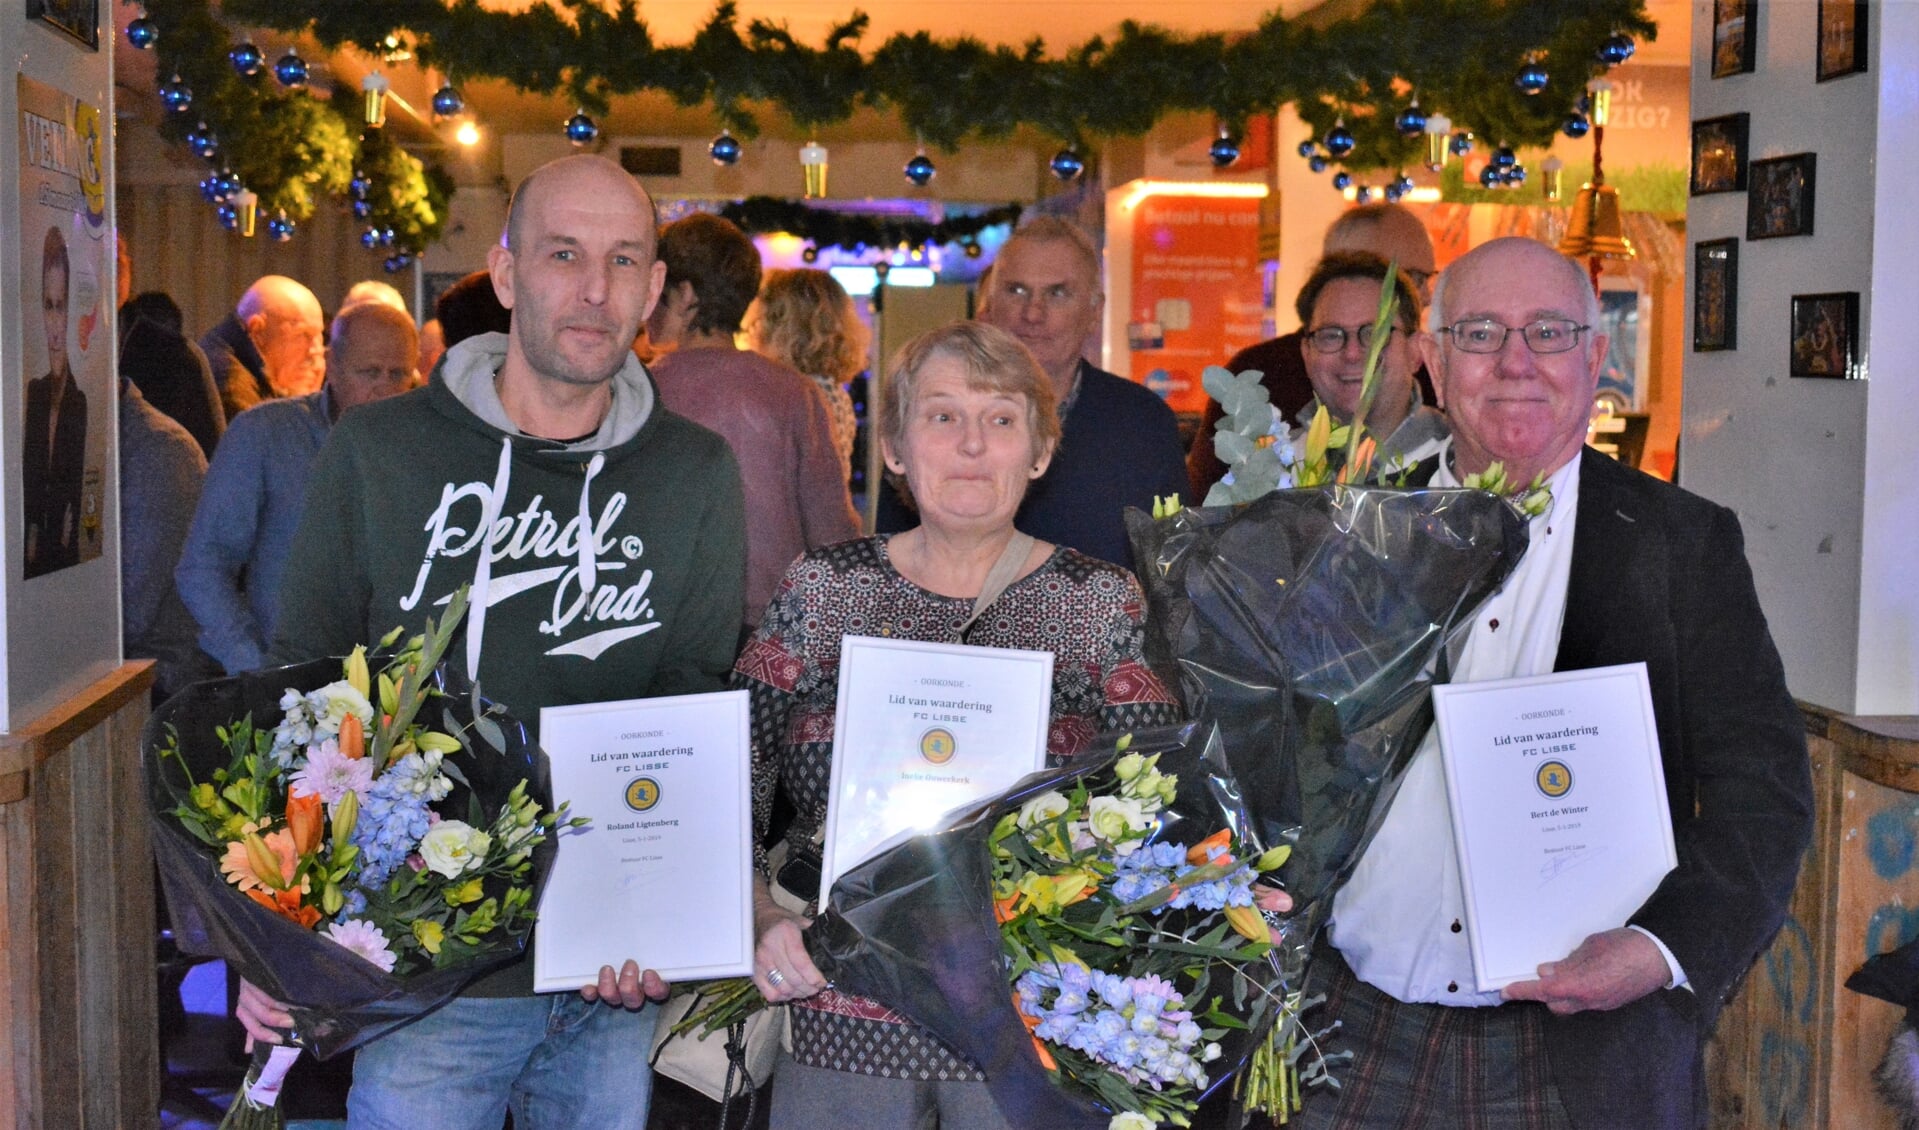 Roland, Ineke en Bert met bloemen en de waarderingsspeld voor hun vrijwilligerswerk.